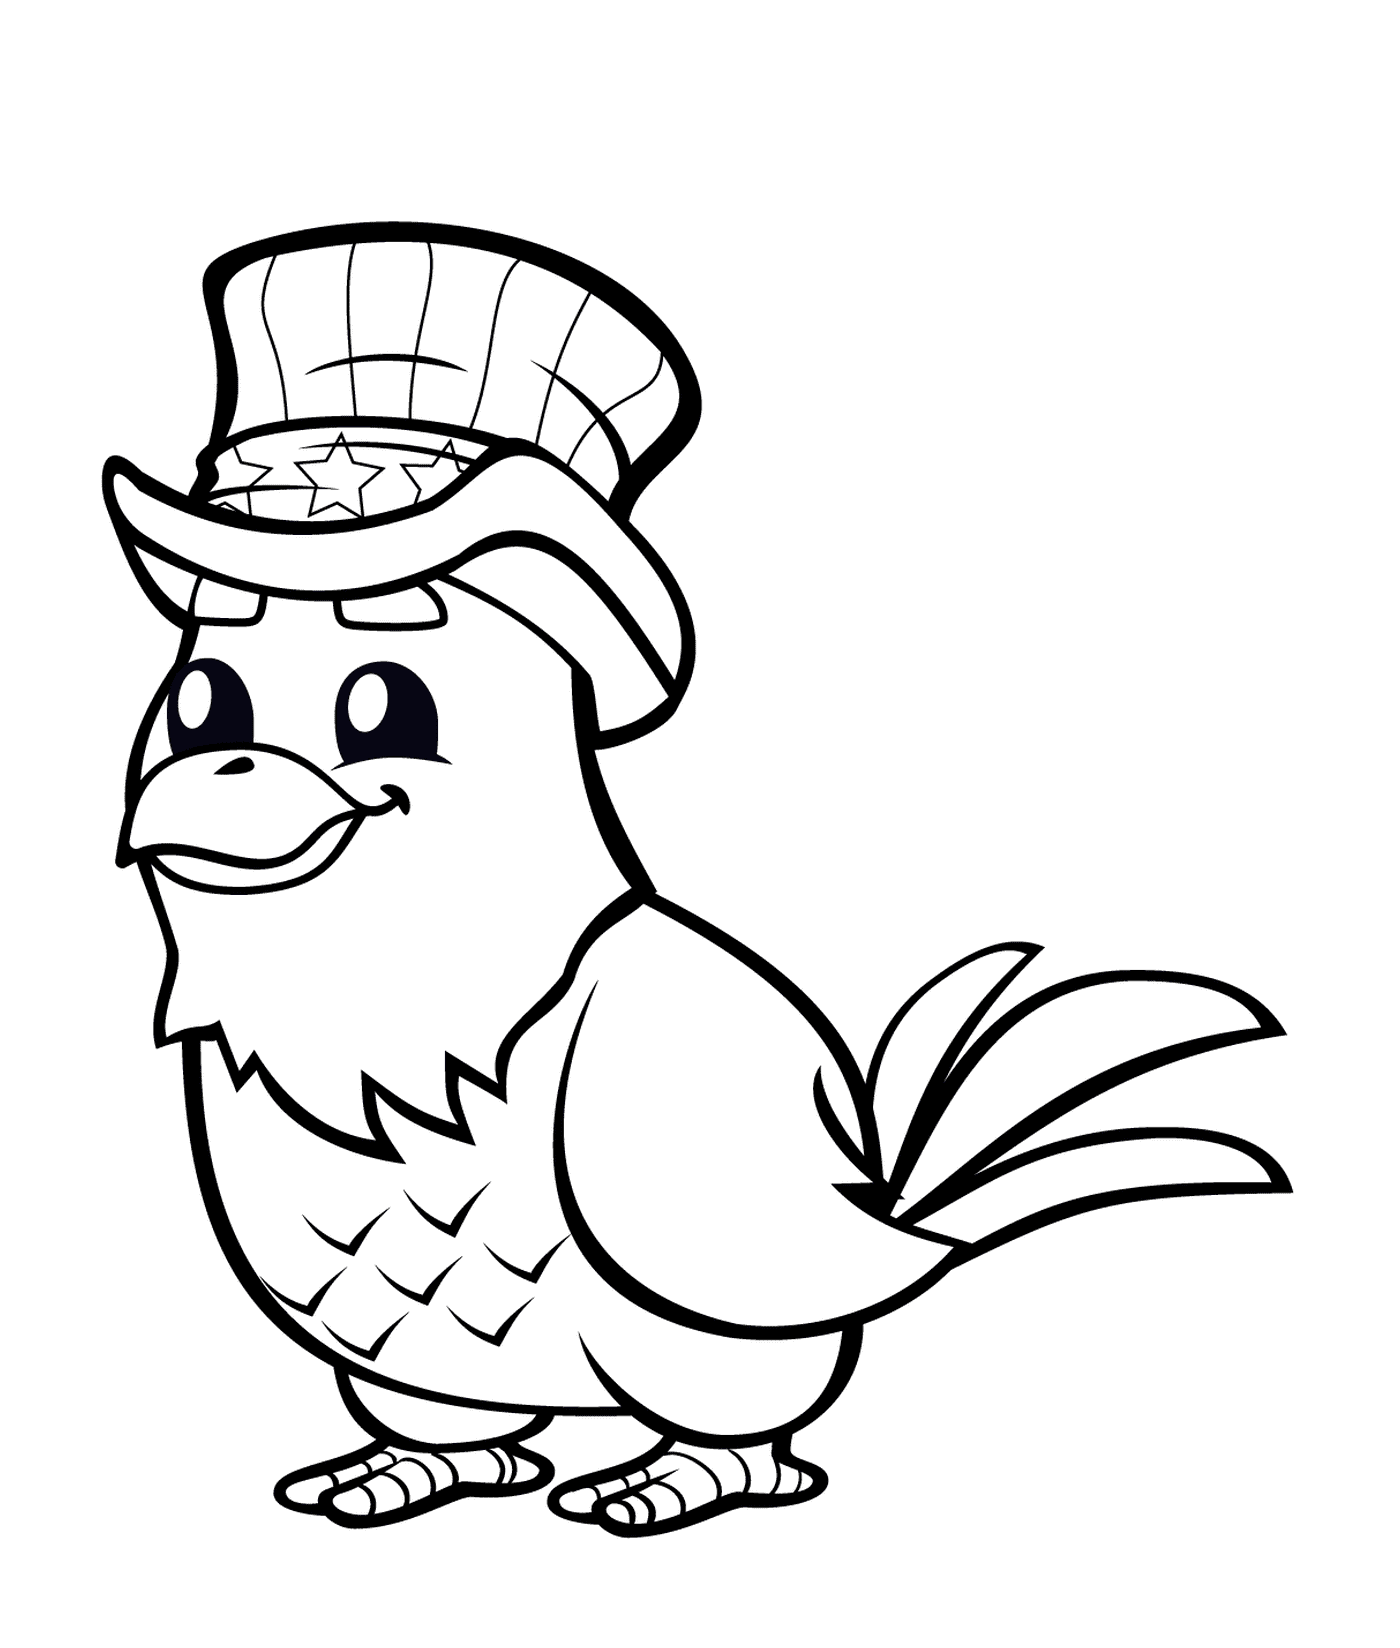  A bird wearing a high-shape hat 